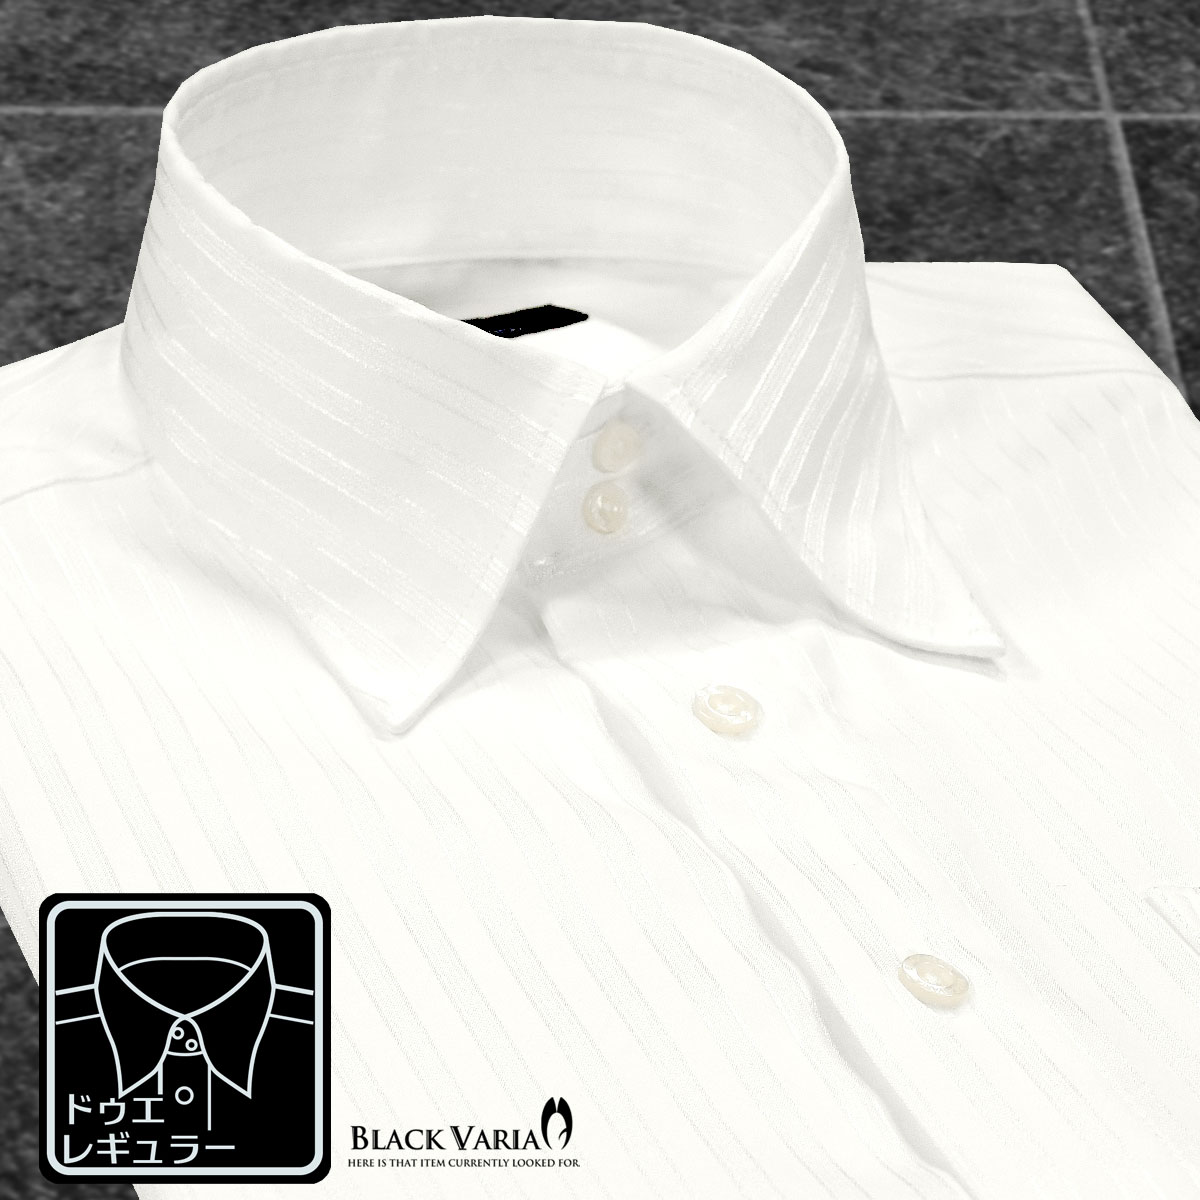 ドゥエボットーニ サテンシャツ ドレスシャツ ドゥエボットーニ 襟高 ストライプ柄 レギュラーカラー 日本製 ジャガード パーティー メンズ mens ファッション おしゃれ (ホワイト白) 191850